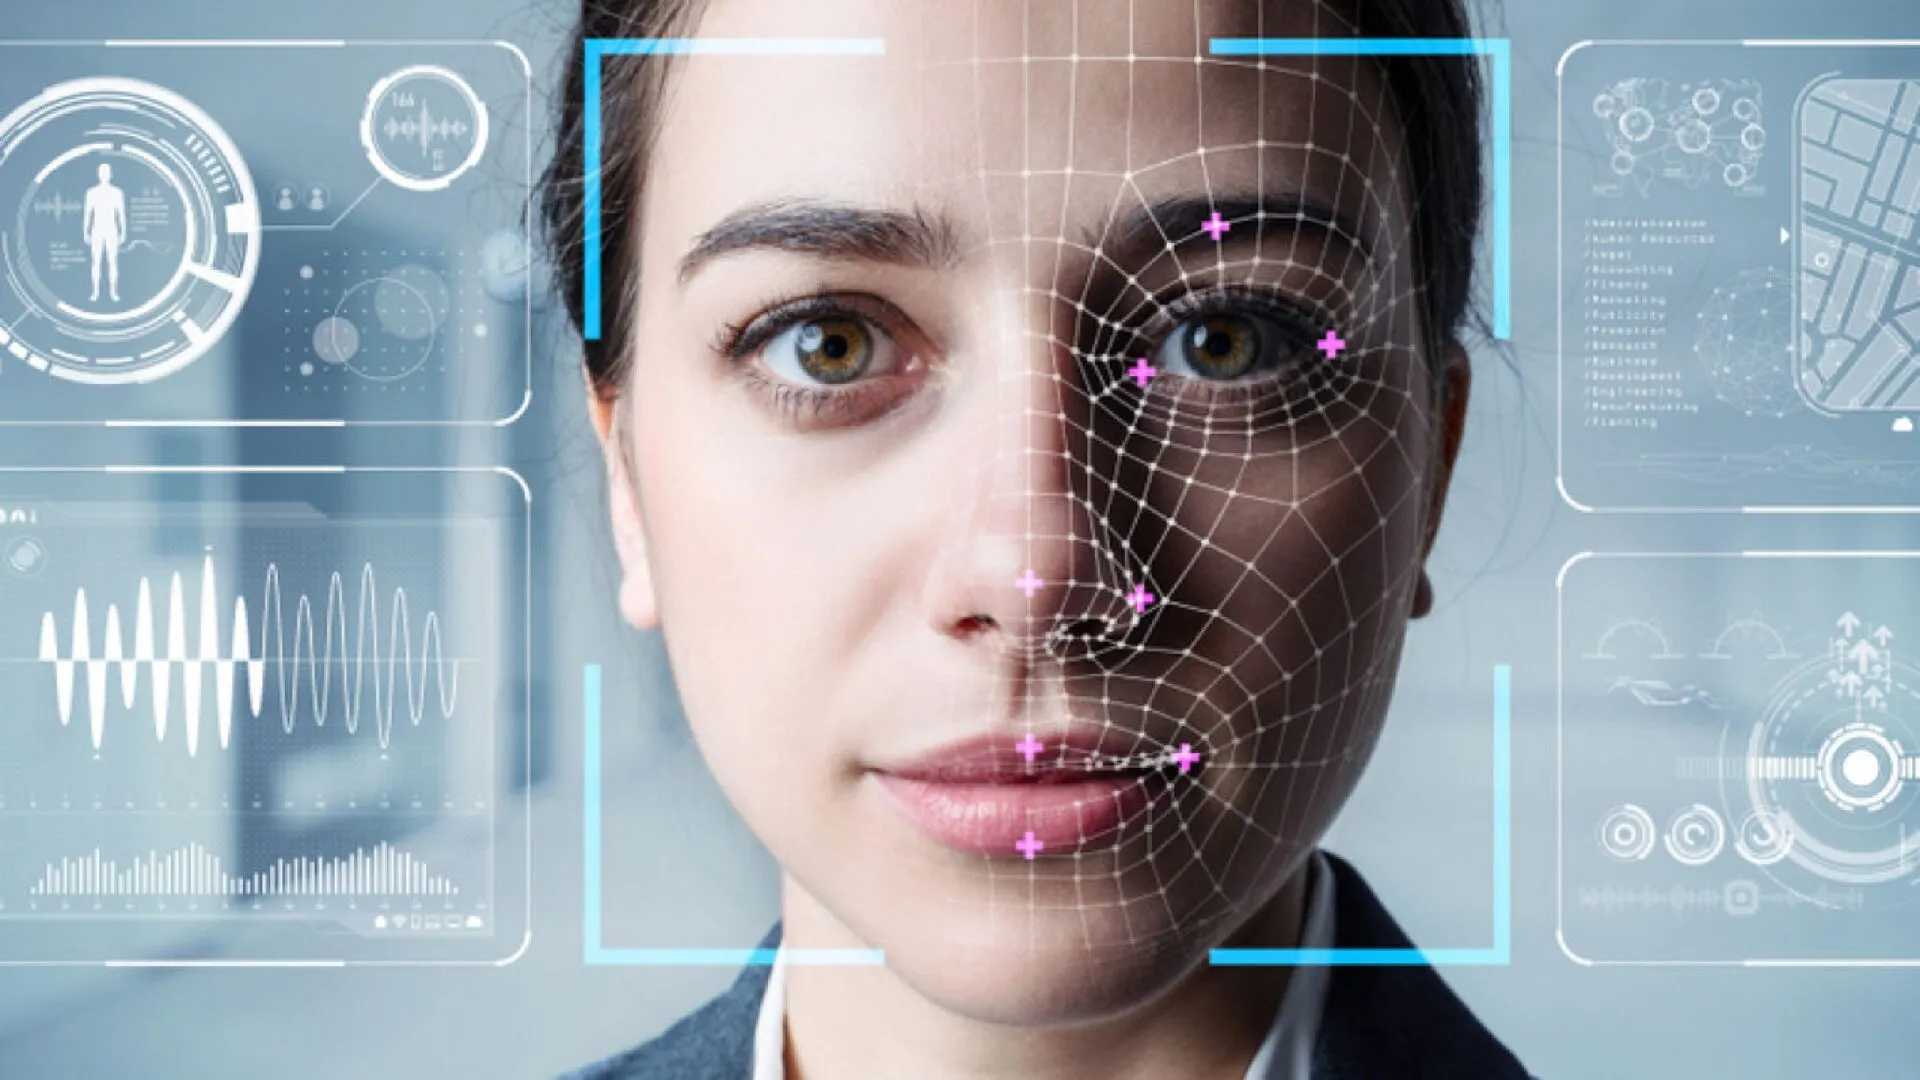 La tecnología de reconocimiento facial: ¿una invasión a nuestra privacidad?